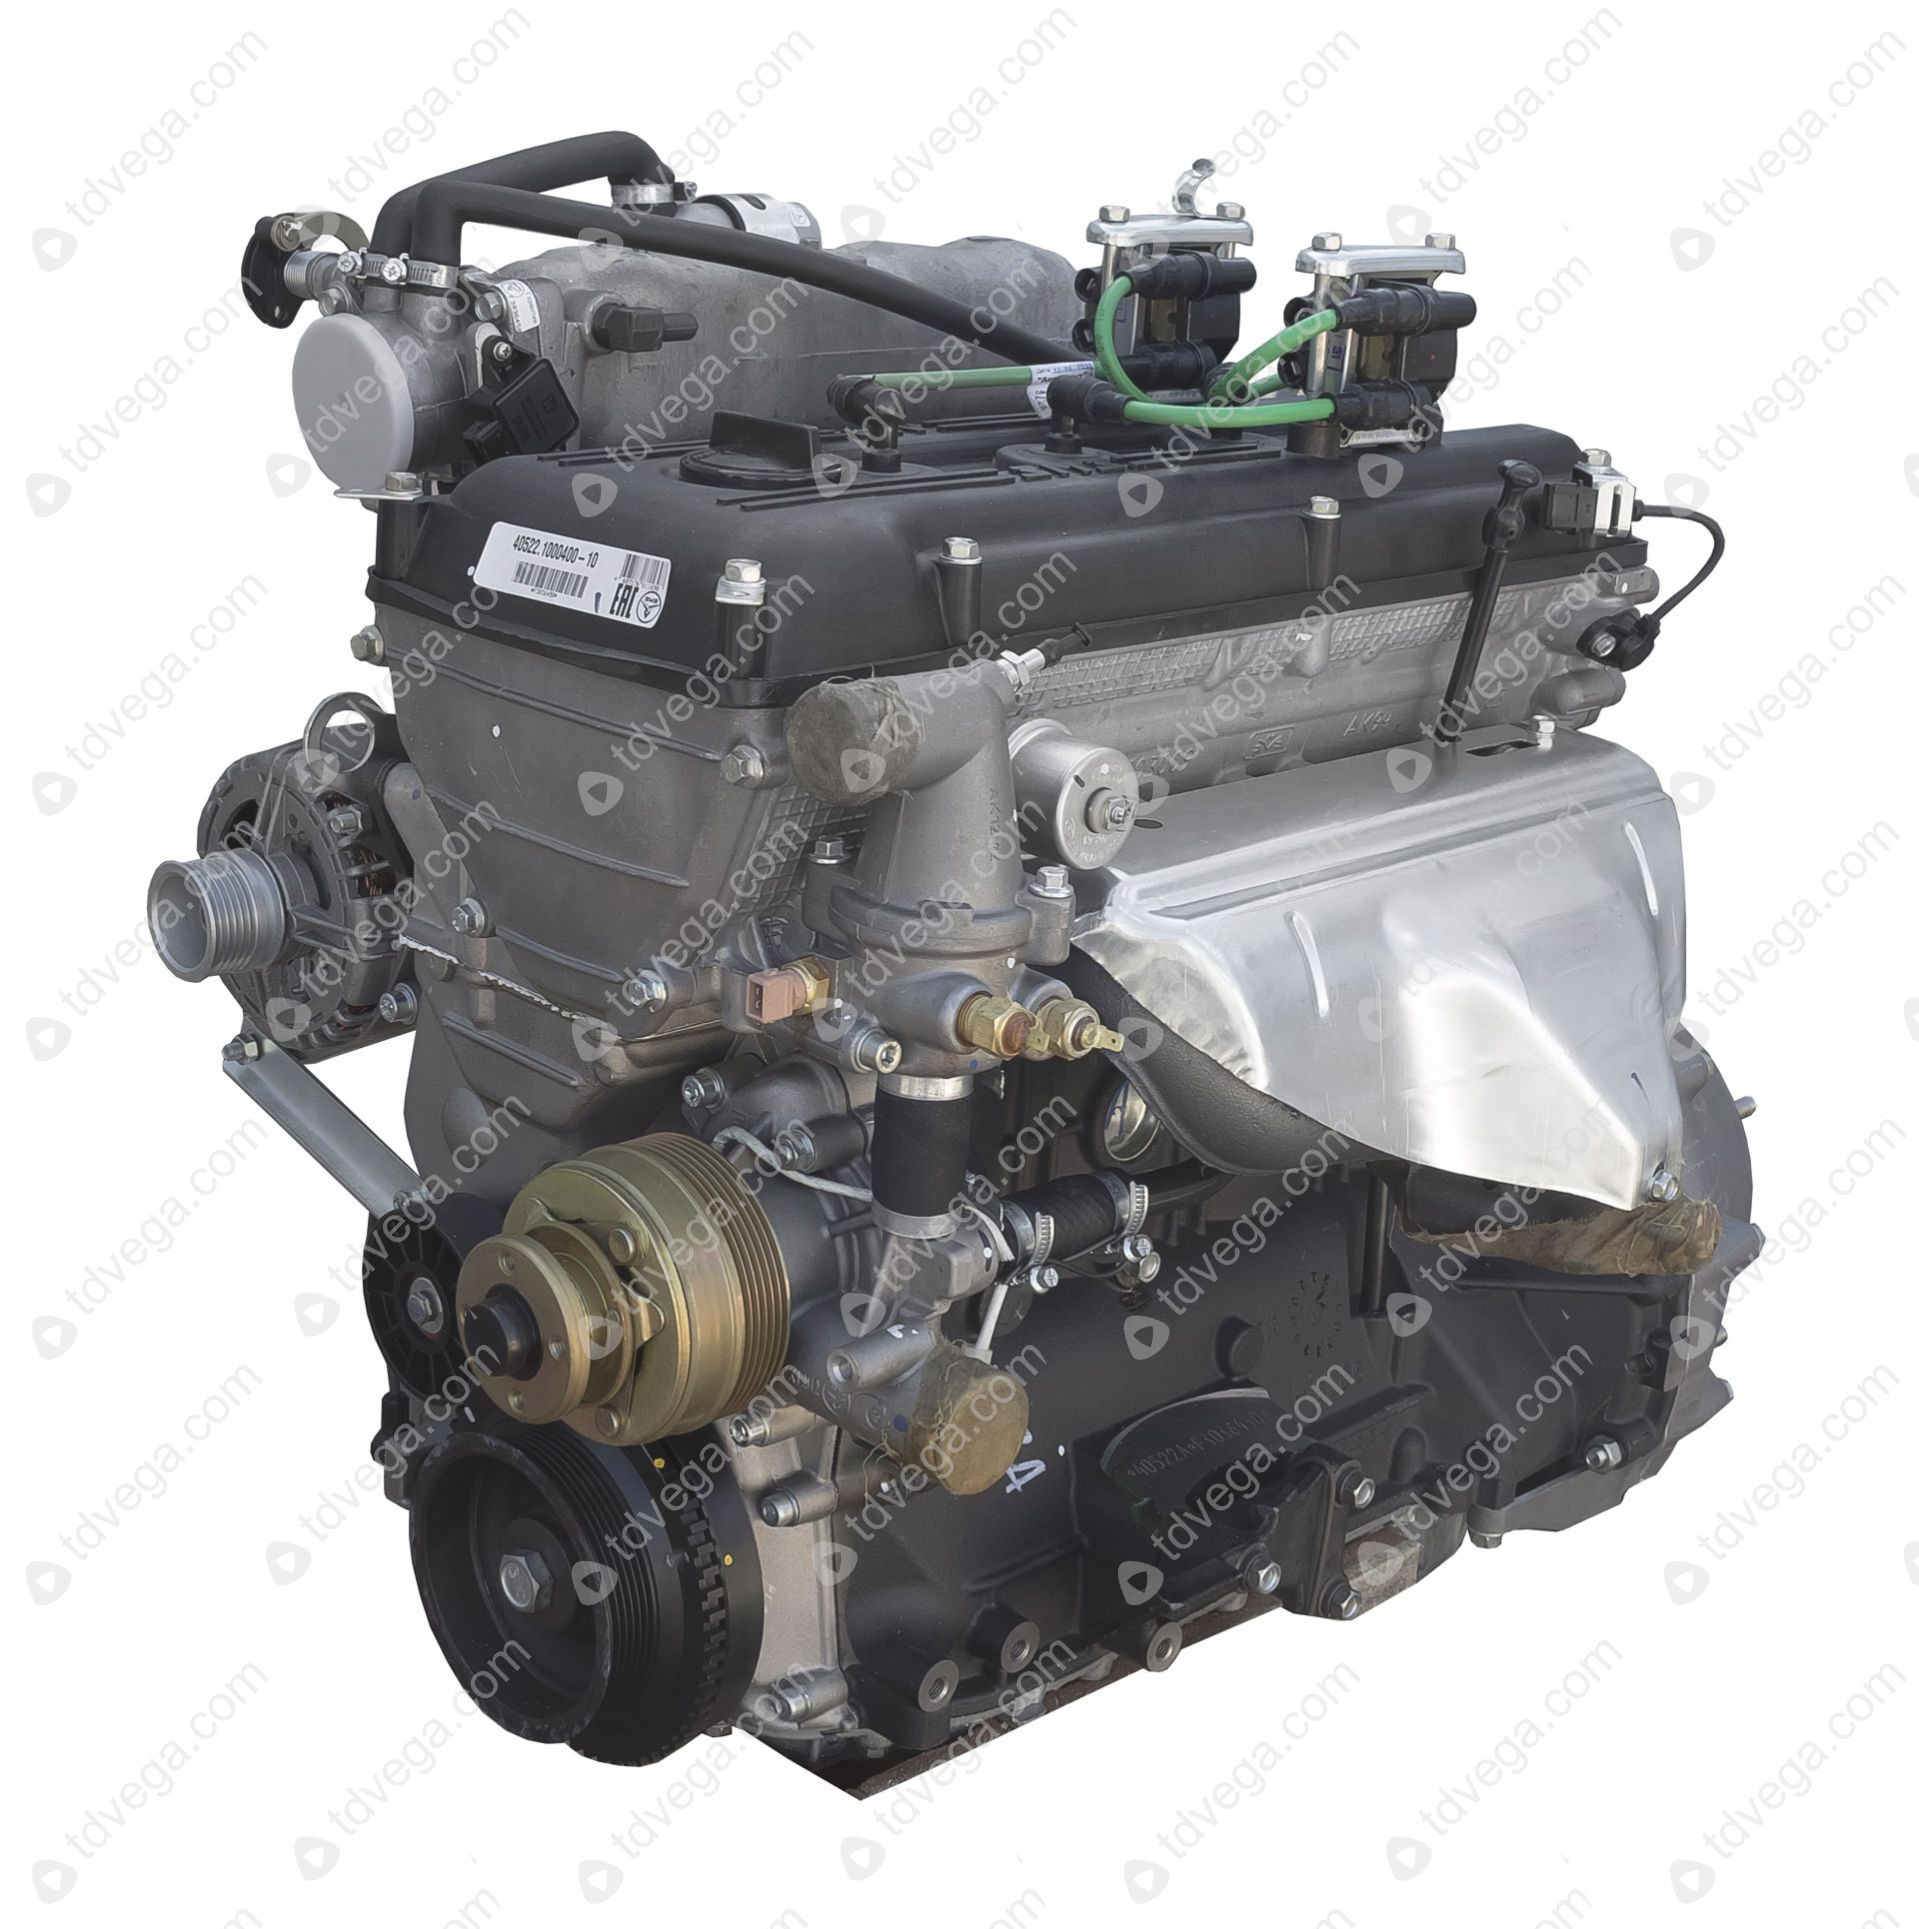 Б двигатель 405 купить. 405 Мотор Газель. Двигатель Газель 405 евро 2. Мотор ЗМЗ 405 евро 2. ЗМЗ 405 евро 3.